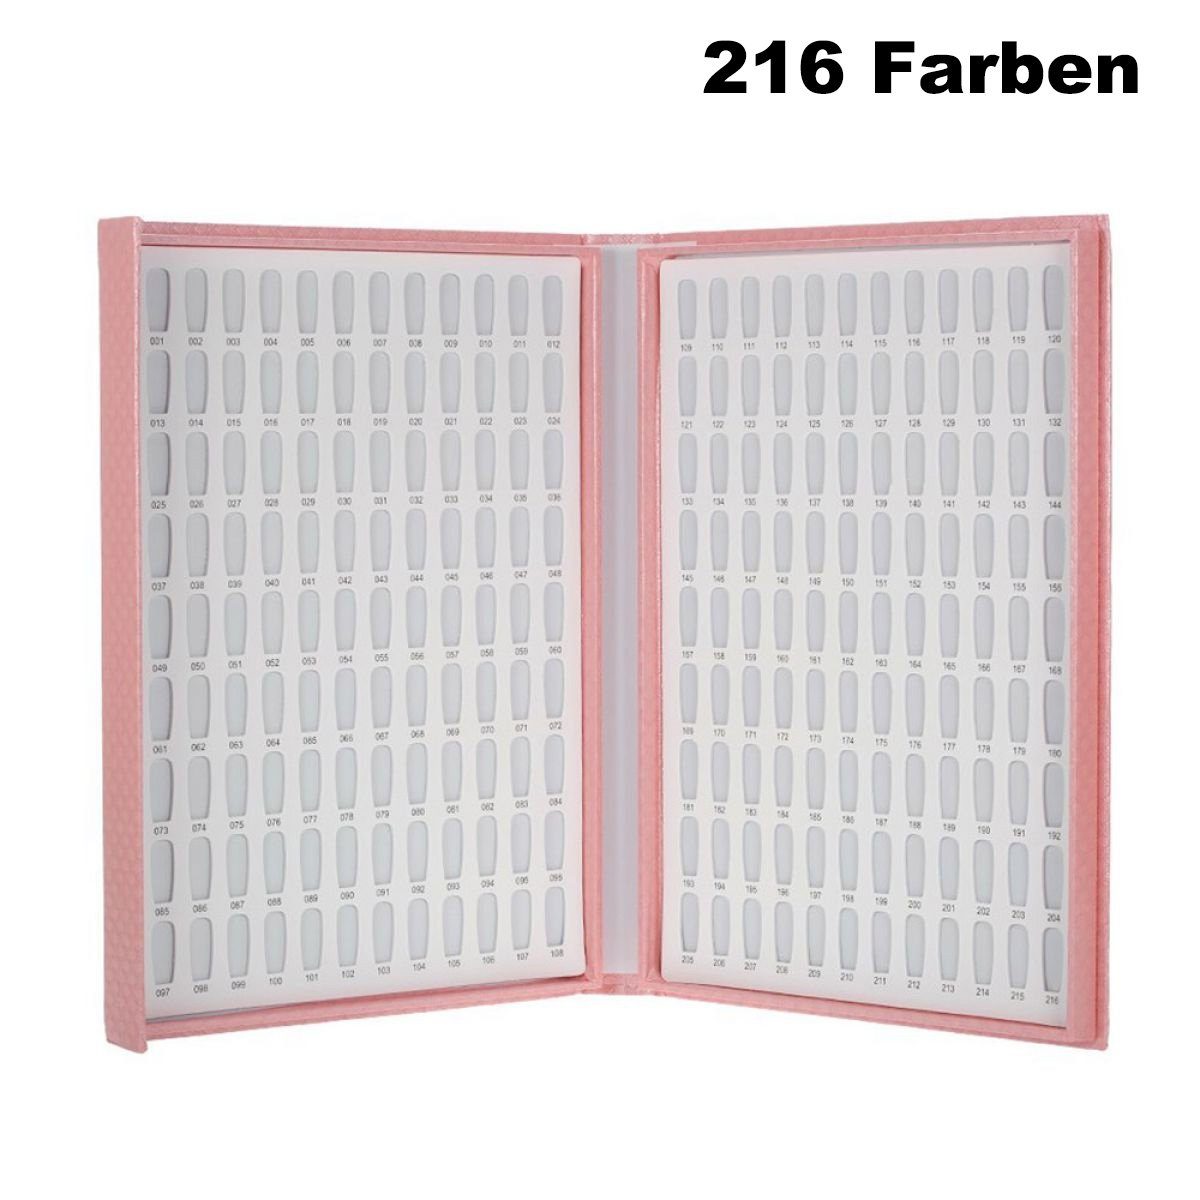 Farben Zubehör Nagel-Display-Buch,216 Juoungle Nagel-Farbkarte,Nagelbuch Nageldesign